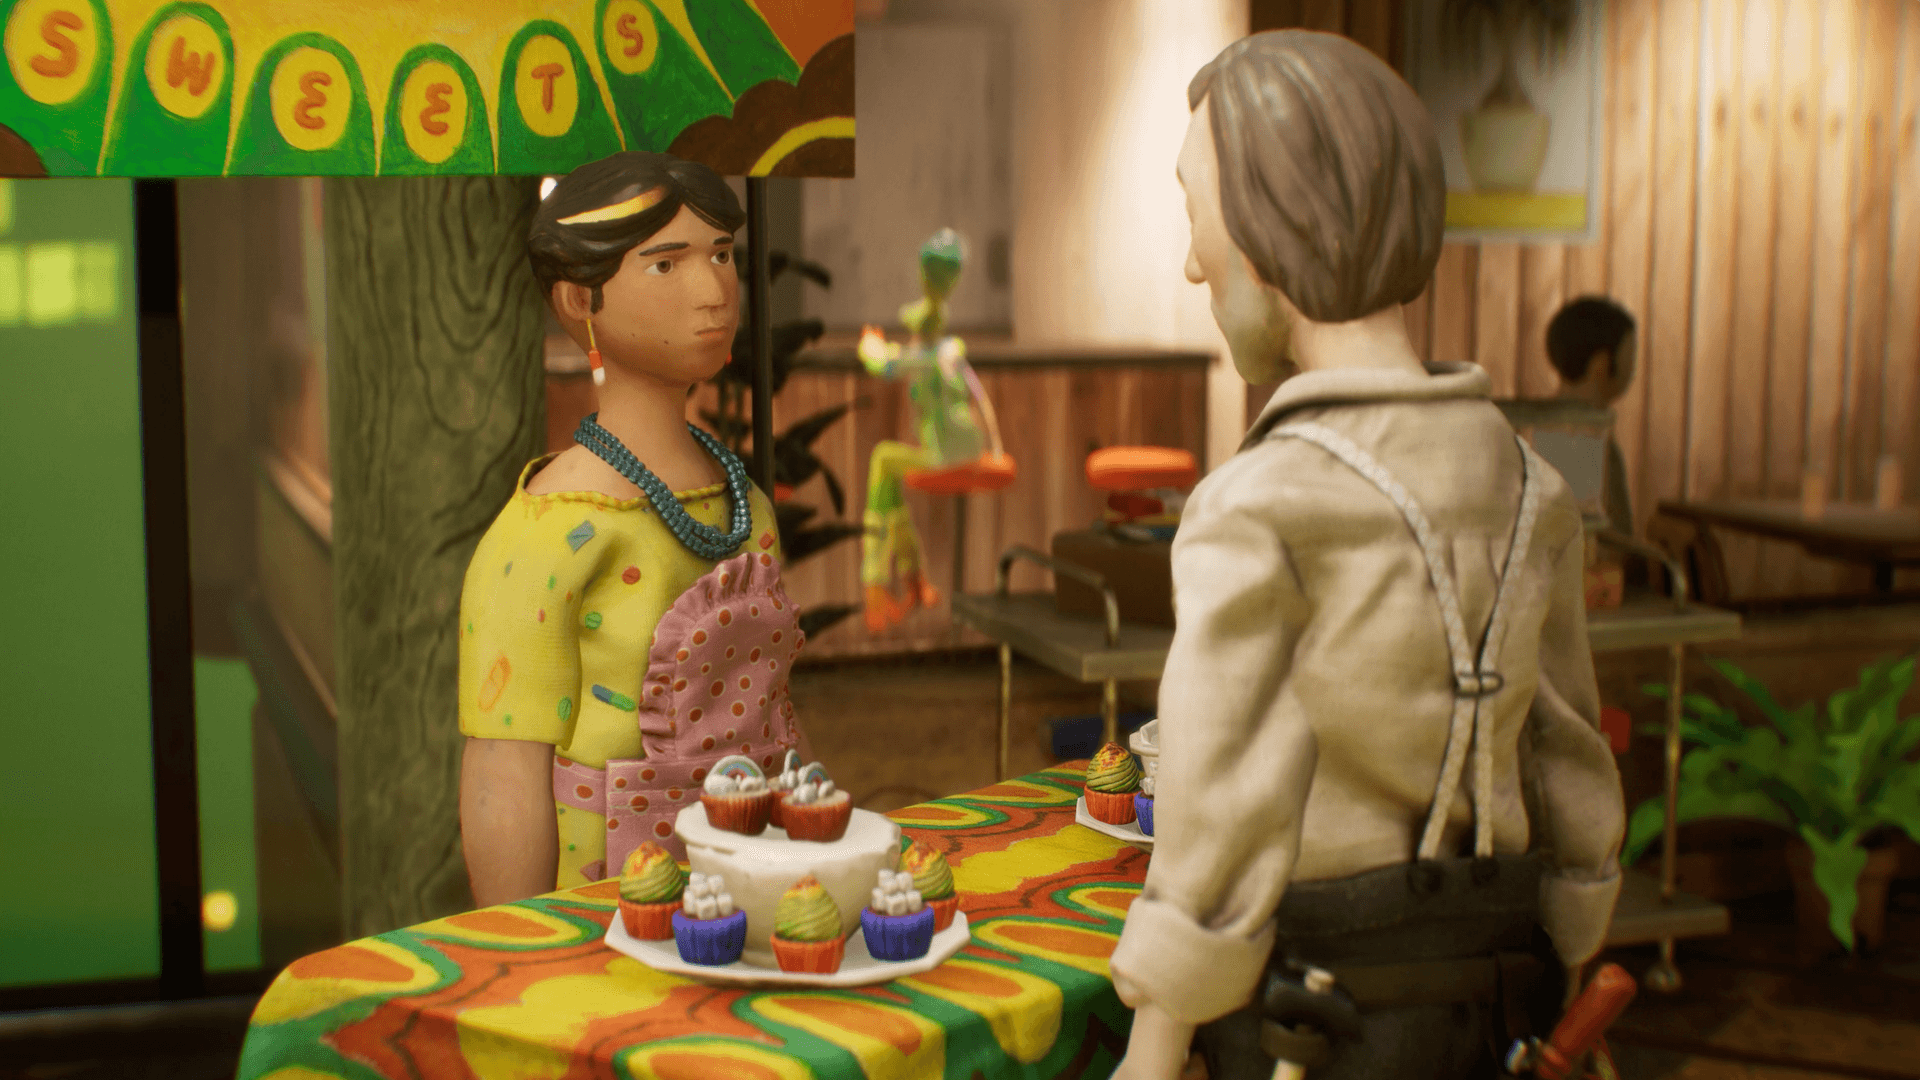 Une scène de pâte à modeler colorée avec deux personnages au premier plan conversant